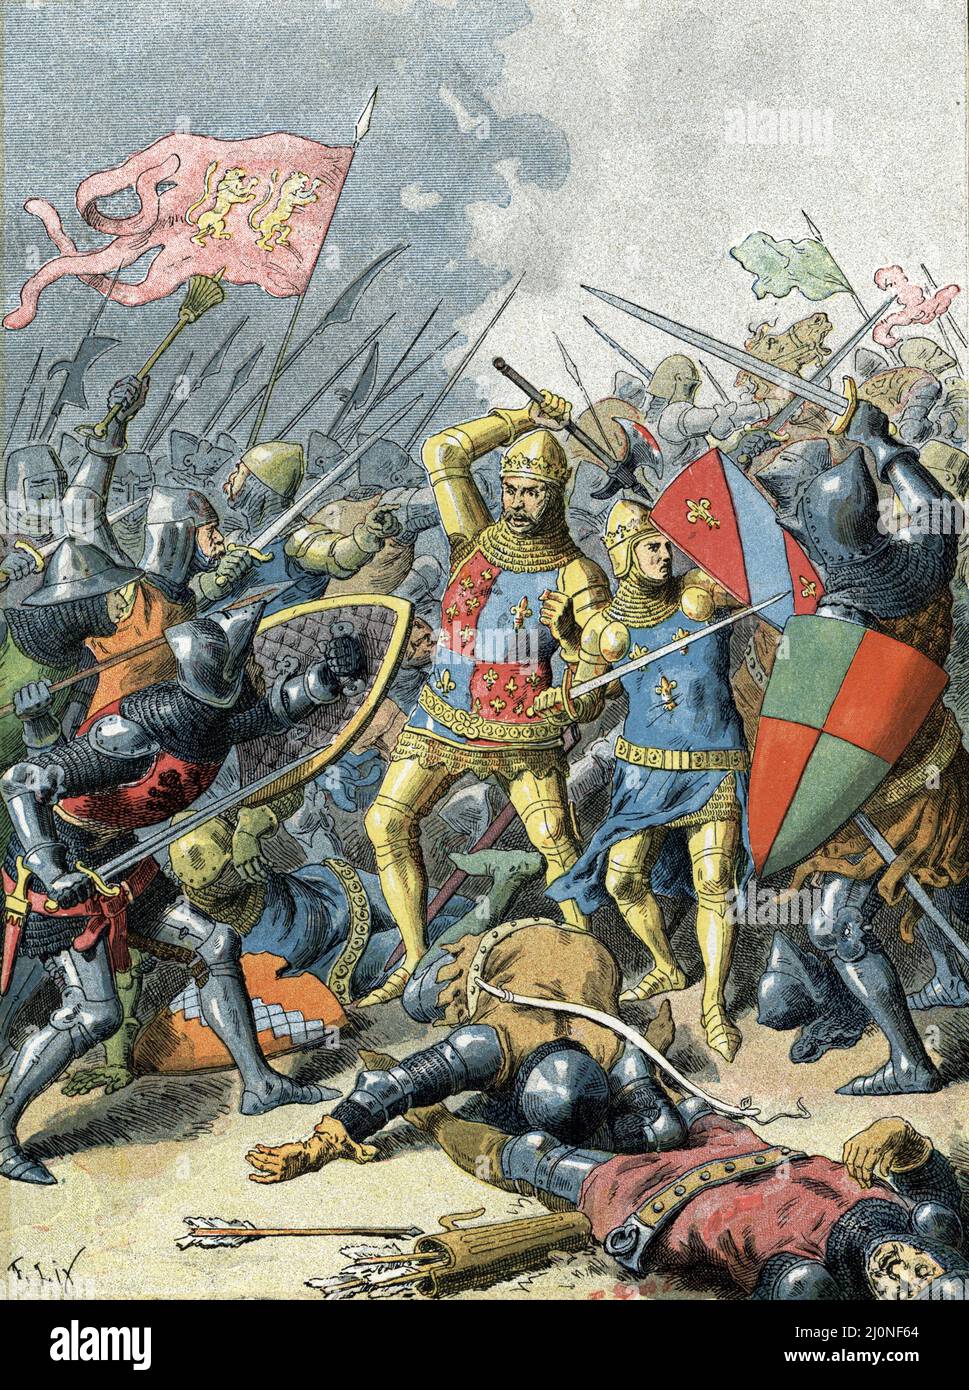 Guerre de cent ans : 'le roi Jean II le bon (1319-1364) a la bataille de Poitiers le 19 septembre 1356' ( bataille de Poitiers entre une armée française commandée par le Roi Jean II et une force anglo-gascon sous Edward, le Prince Noir, Le 19 septembre 1356 pendant la guerre de cent ans) Gravure tiree de 'la France a travers les siecless' de Witt 1897 Collection privee Banque D'Images